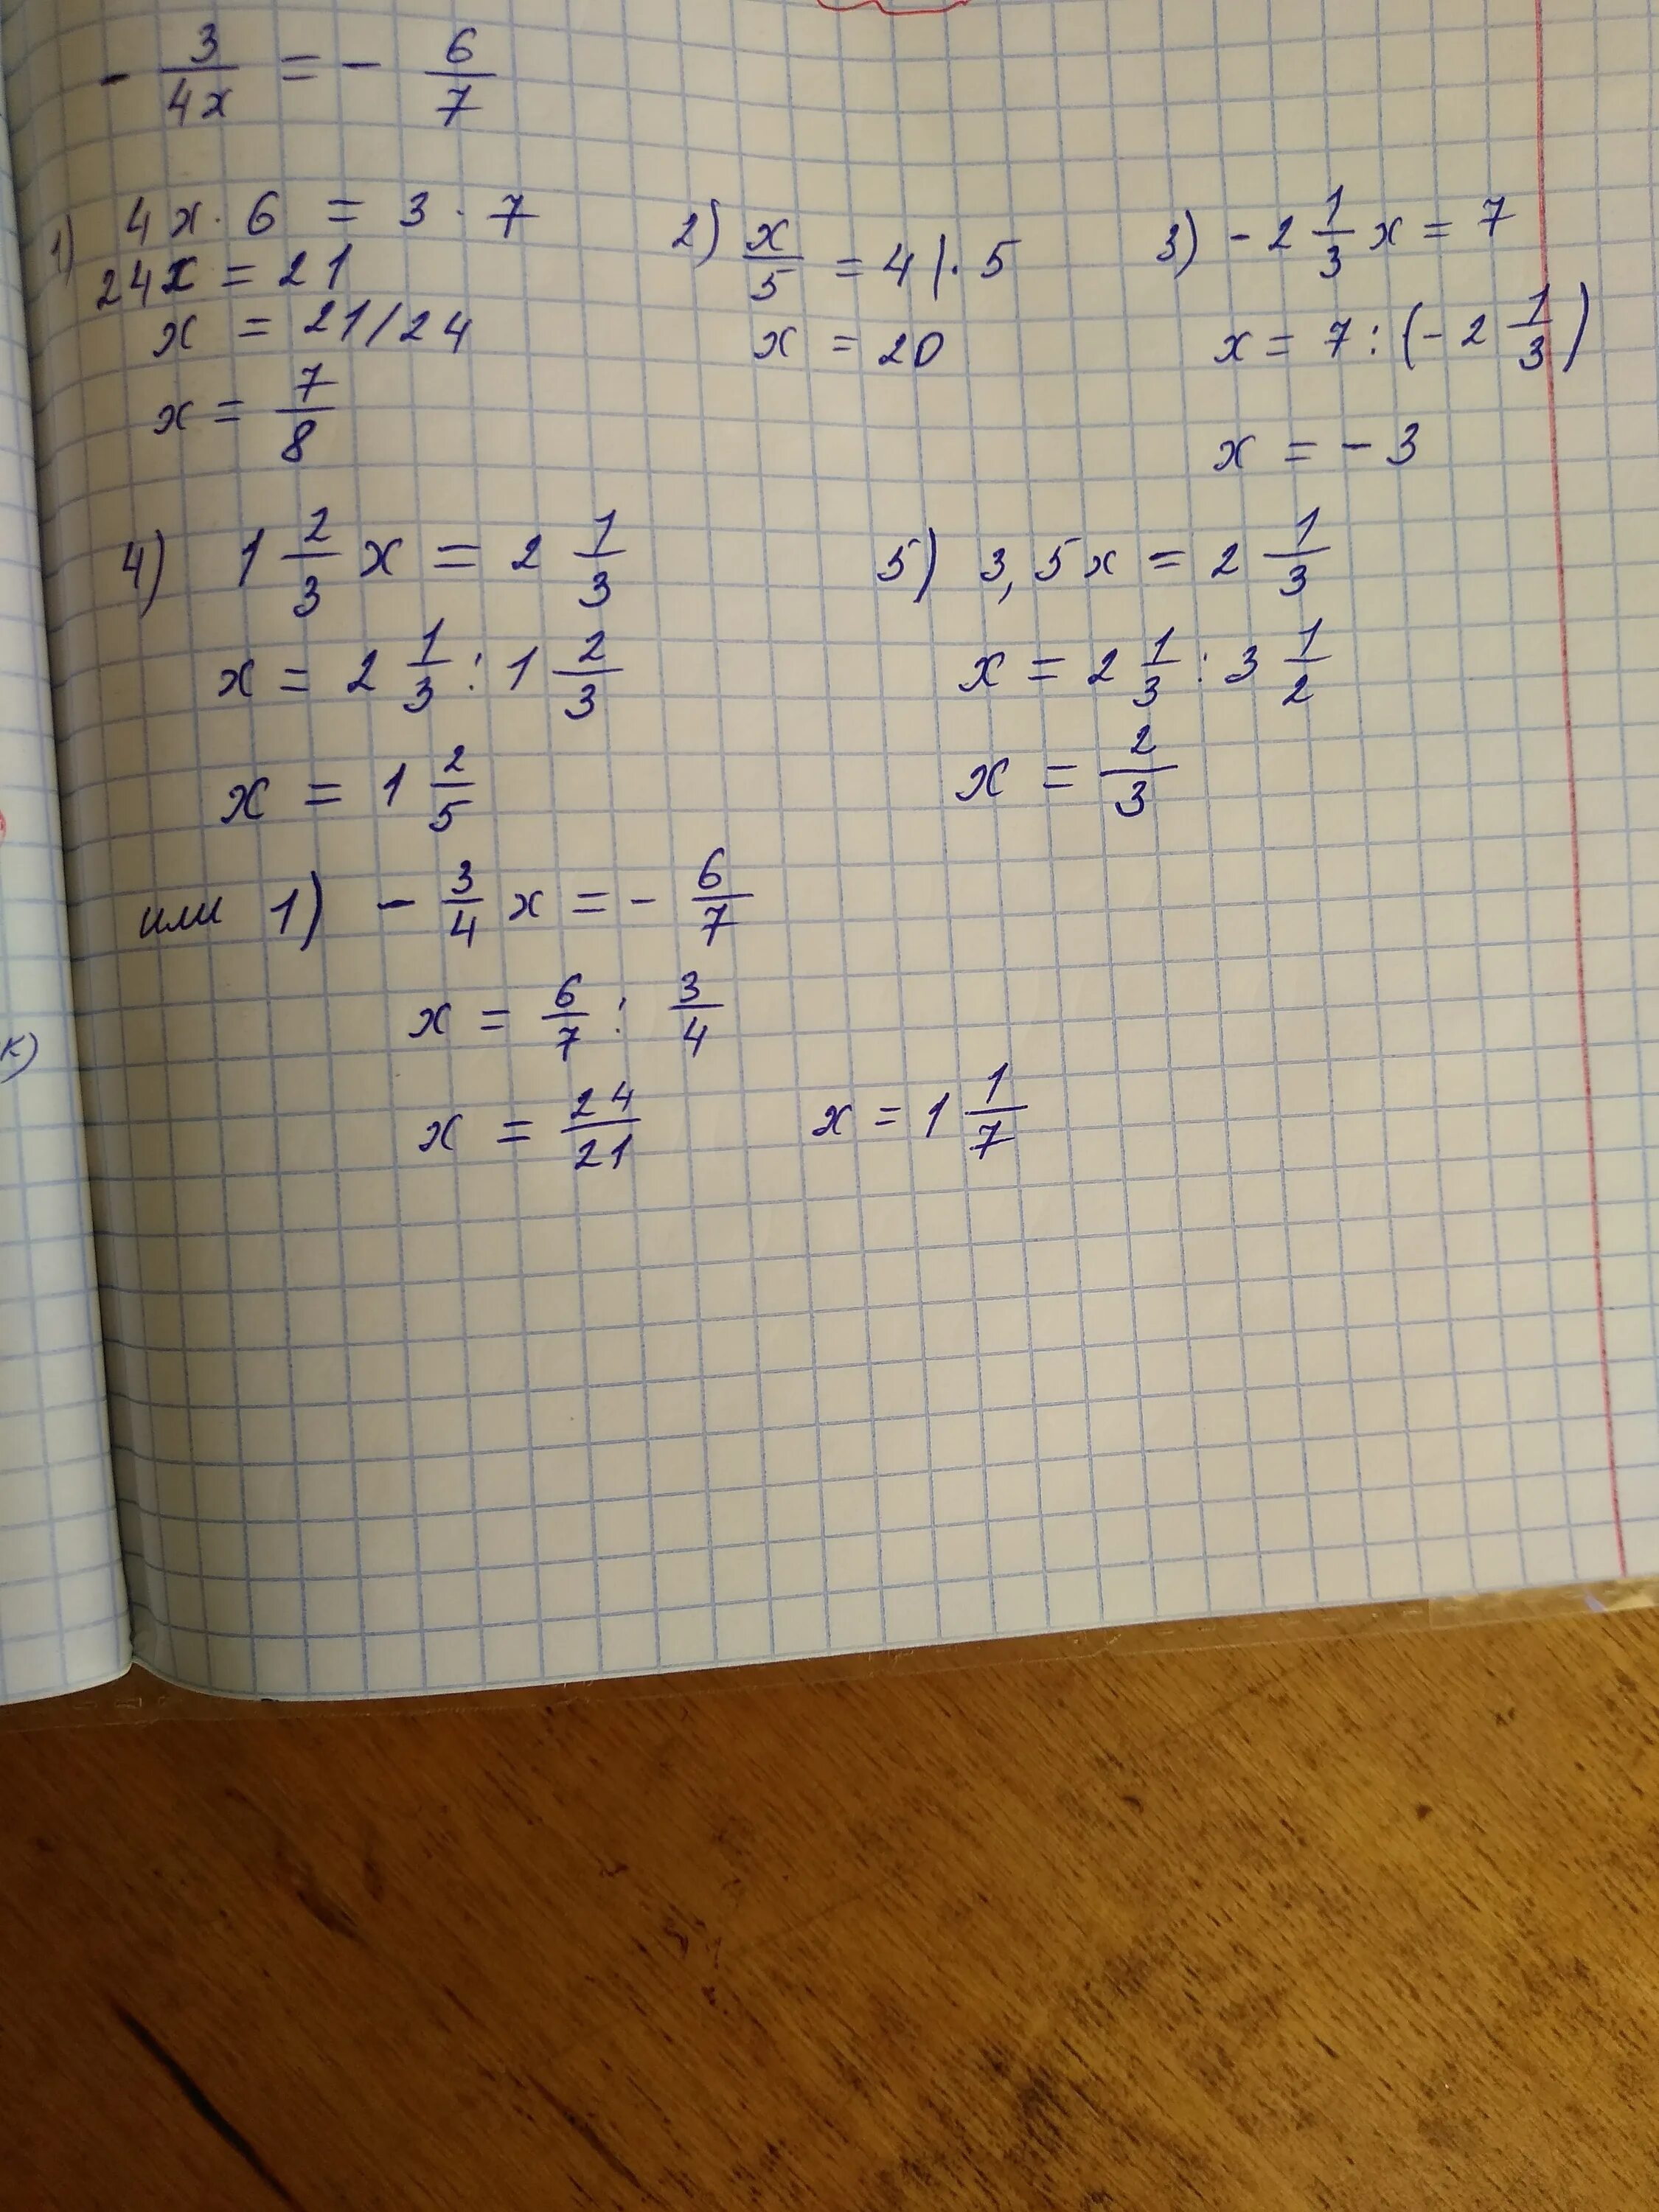 5 6x 1 3x 5 решение. Уравнения с дробями х*5 2/3. Уравнение с дробями х/4+х+1/5=2. 5(2x+6)-3(x+4)=7. X-4/7x=1, 2/5 решение.